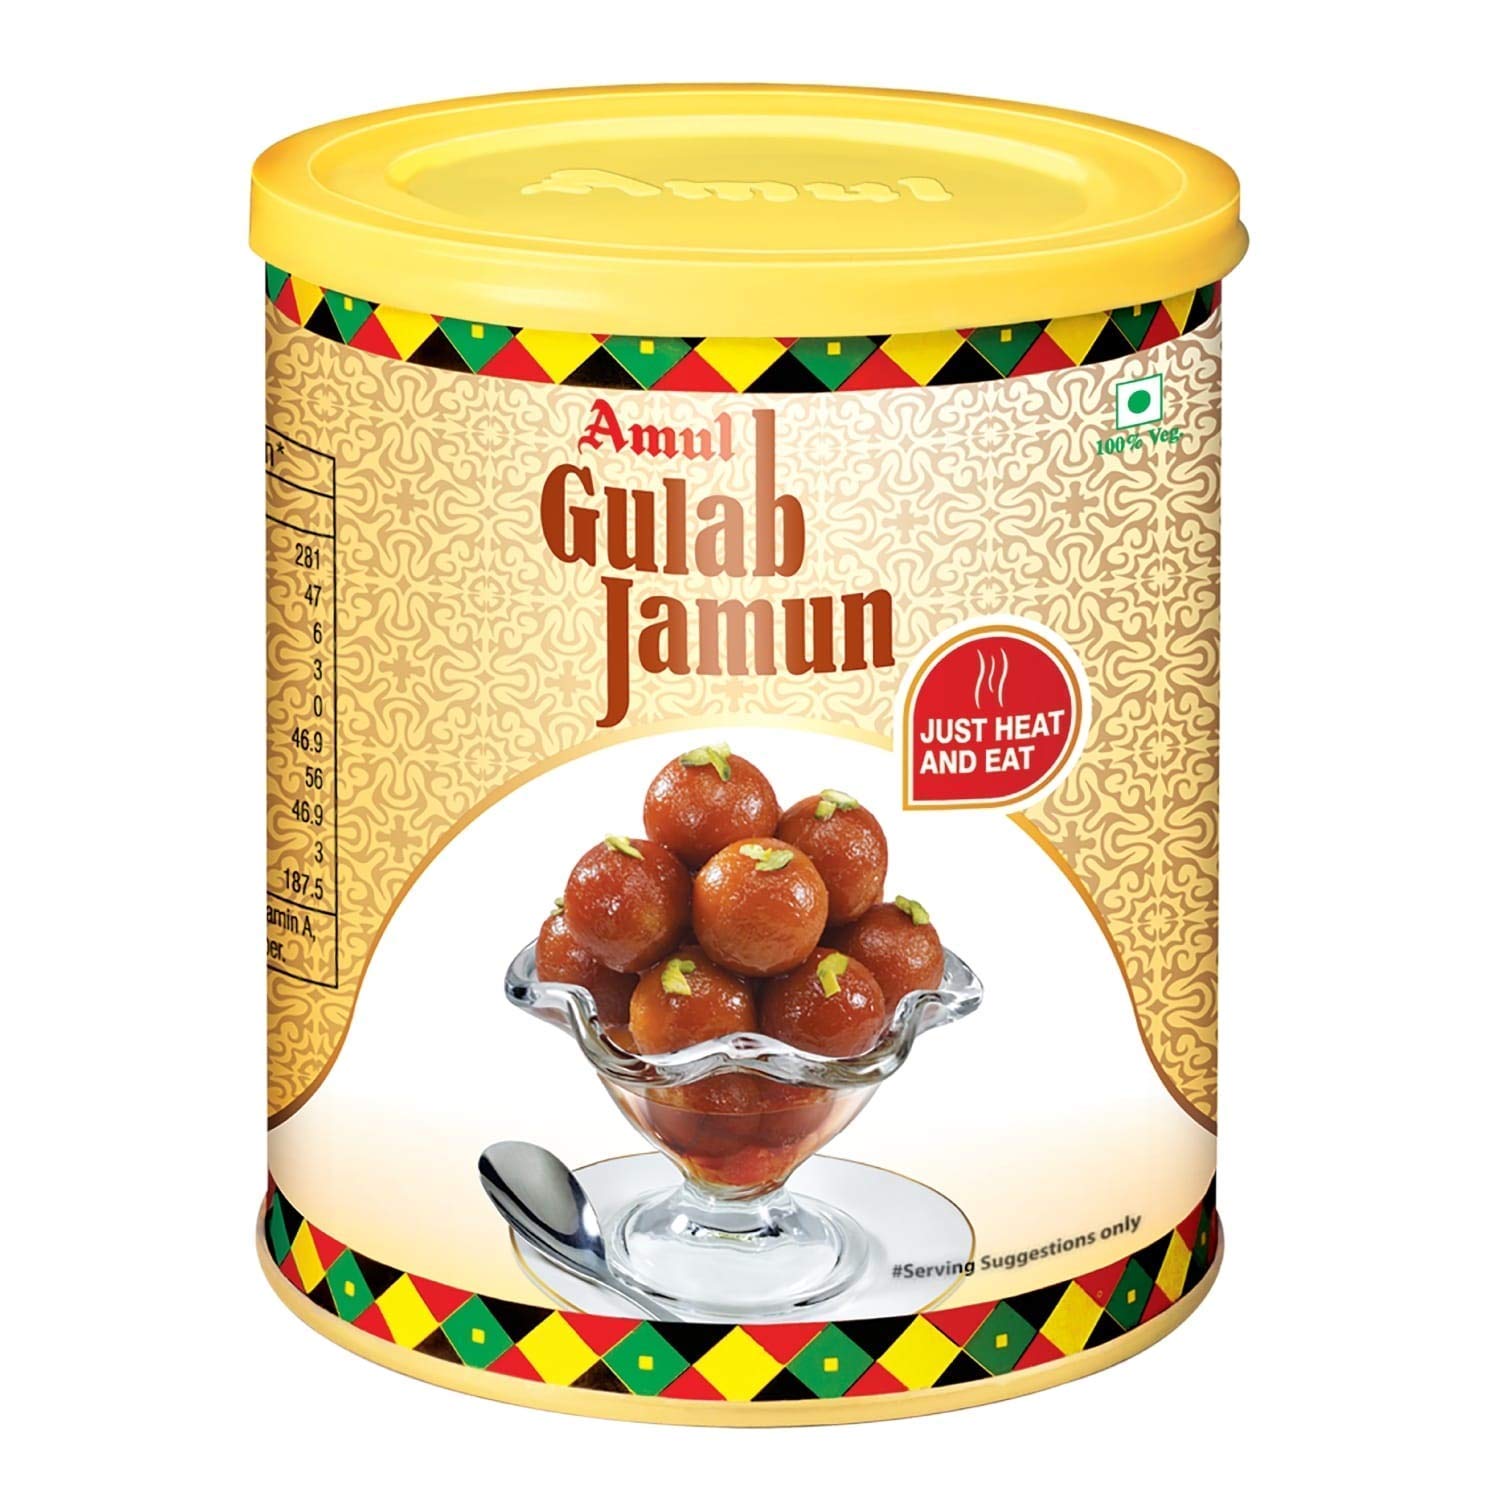 Amul Gulab Jamun, 1kg